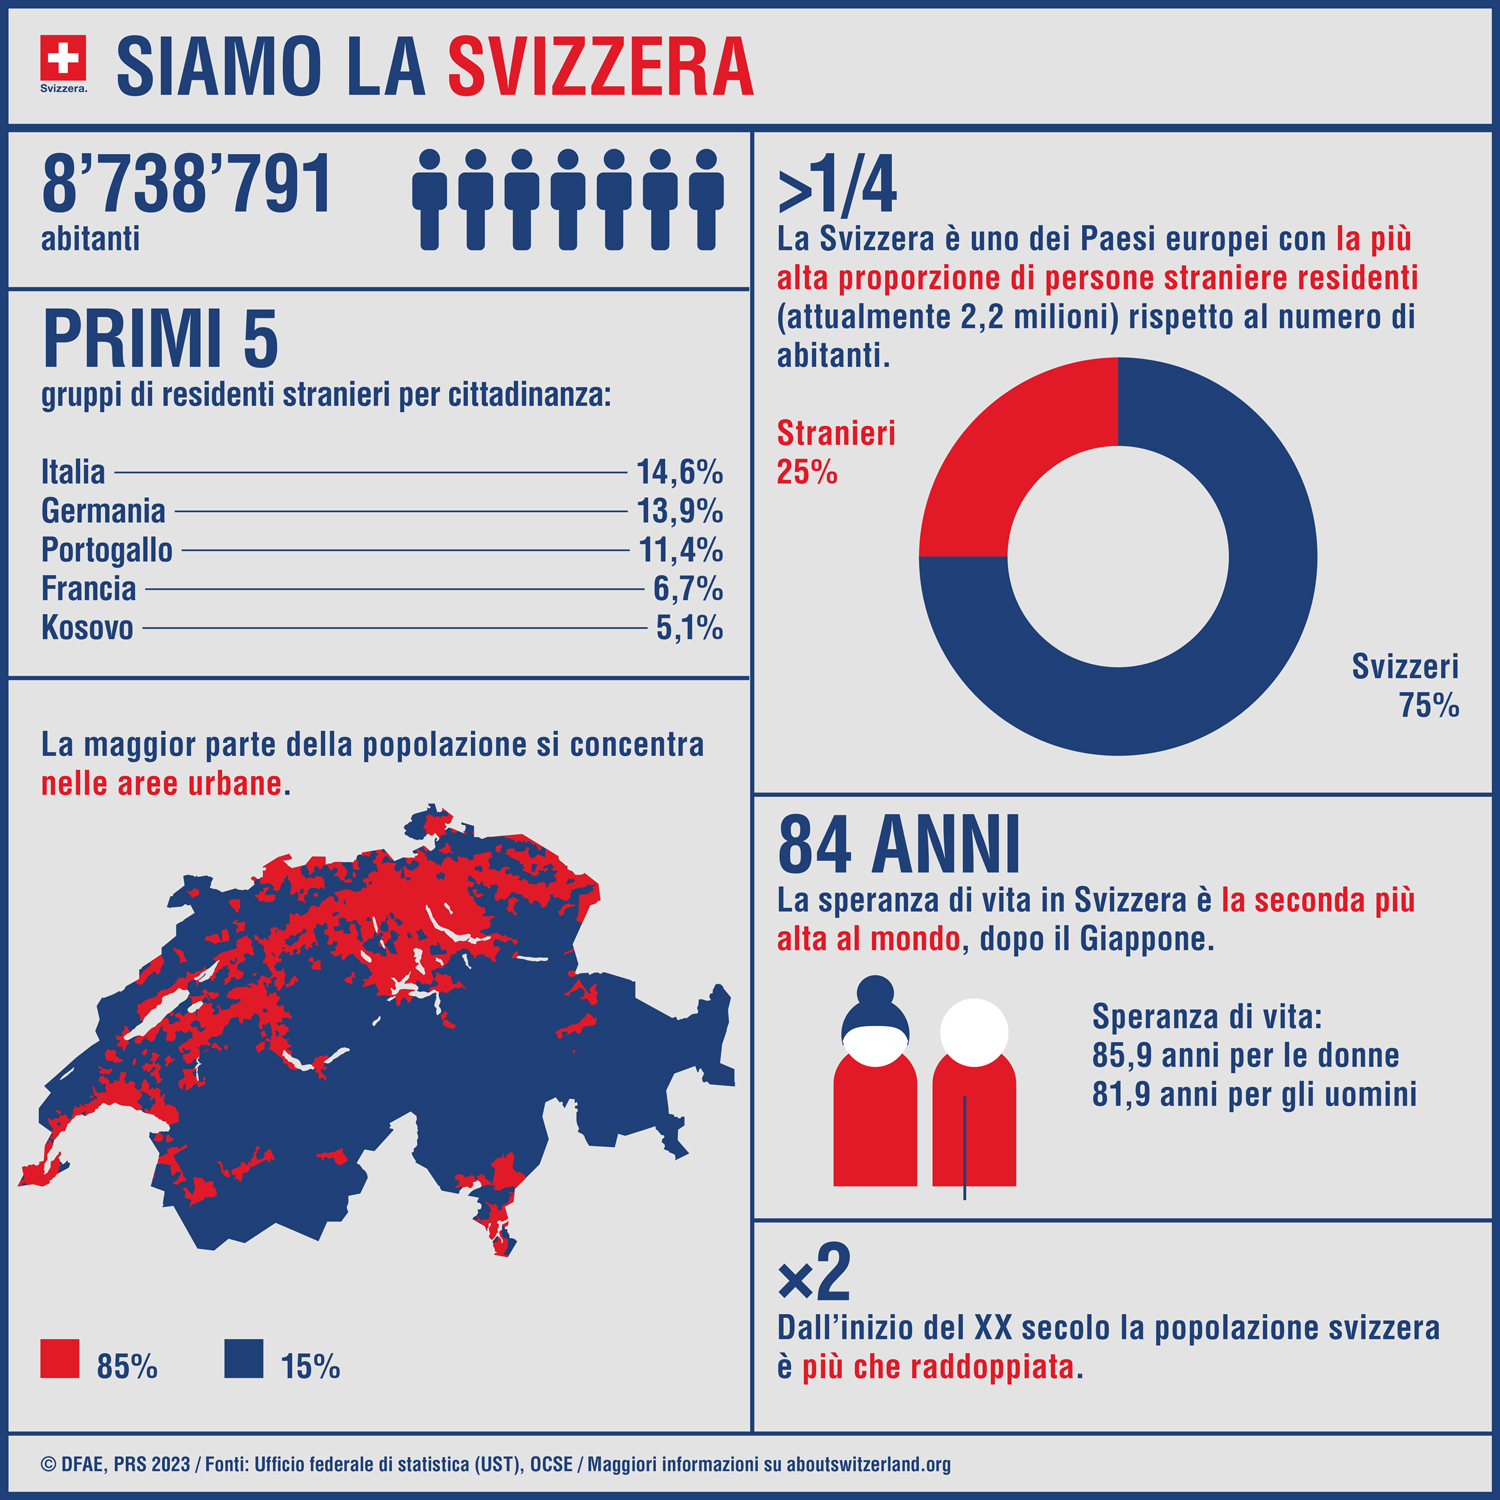 L’infografica presenta le principali cifre sulla popolazione svizzera.